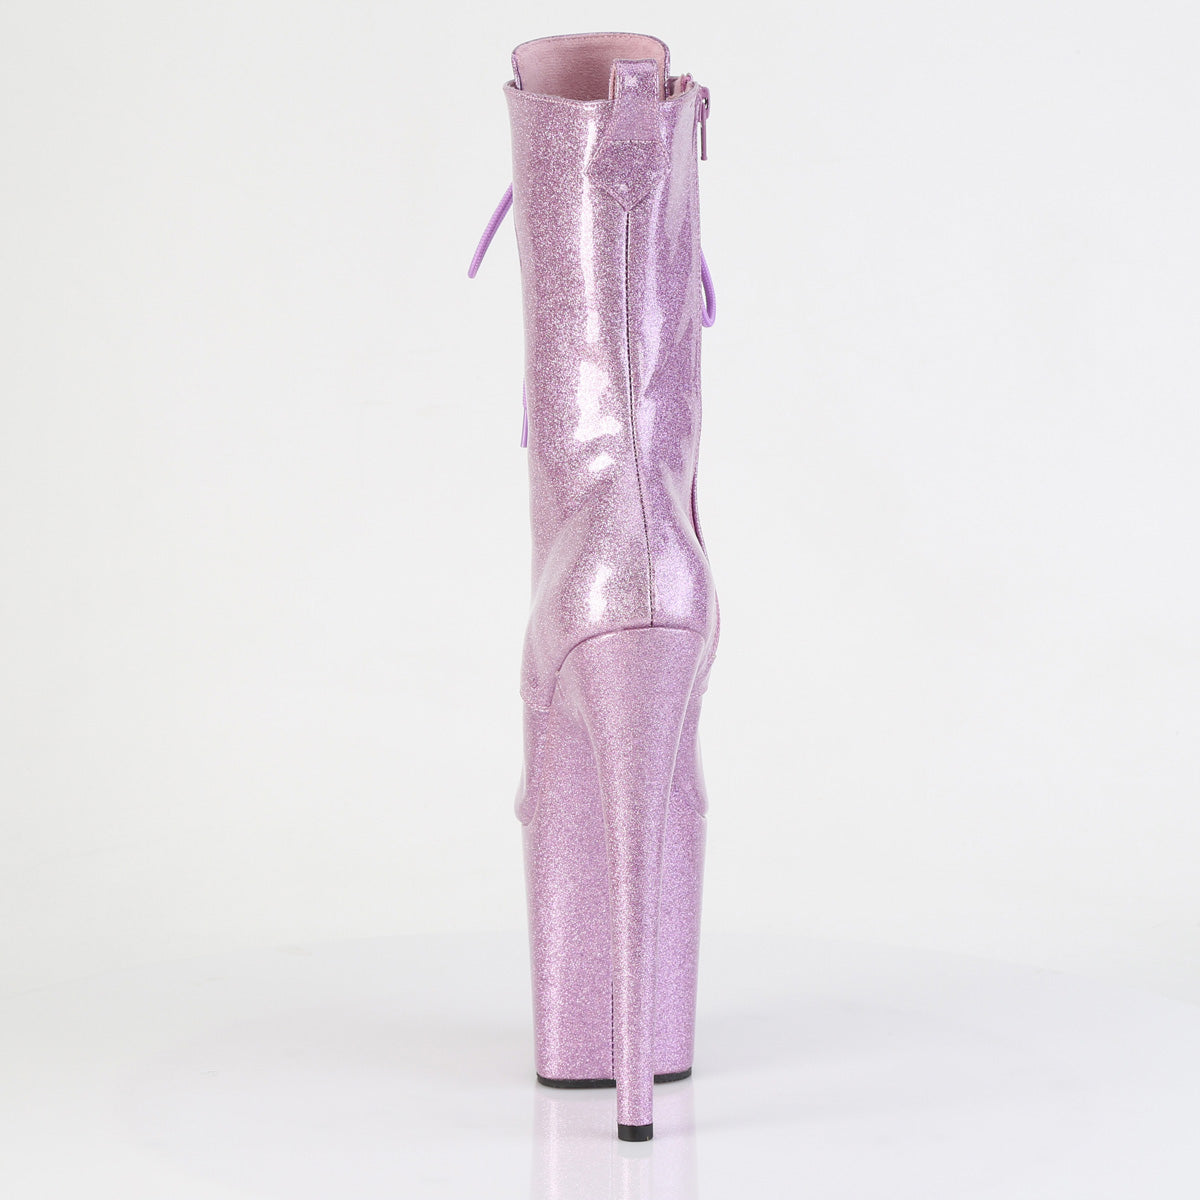 lilac peep toe pole boots flamingo-1041gp